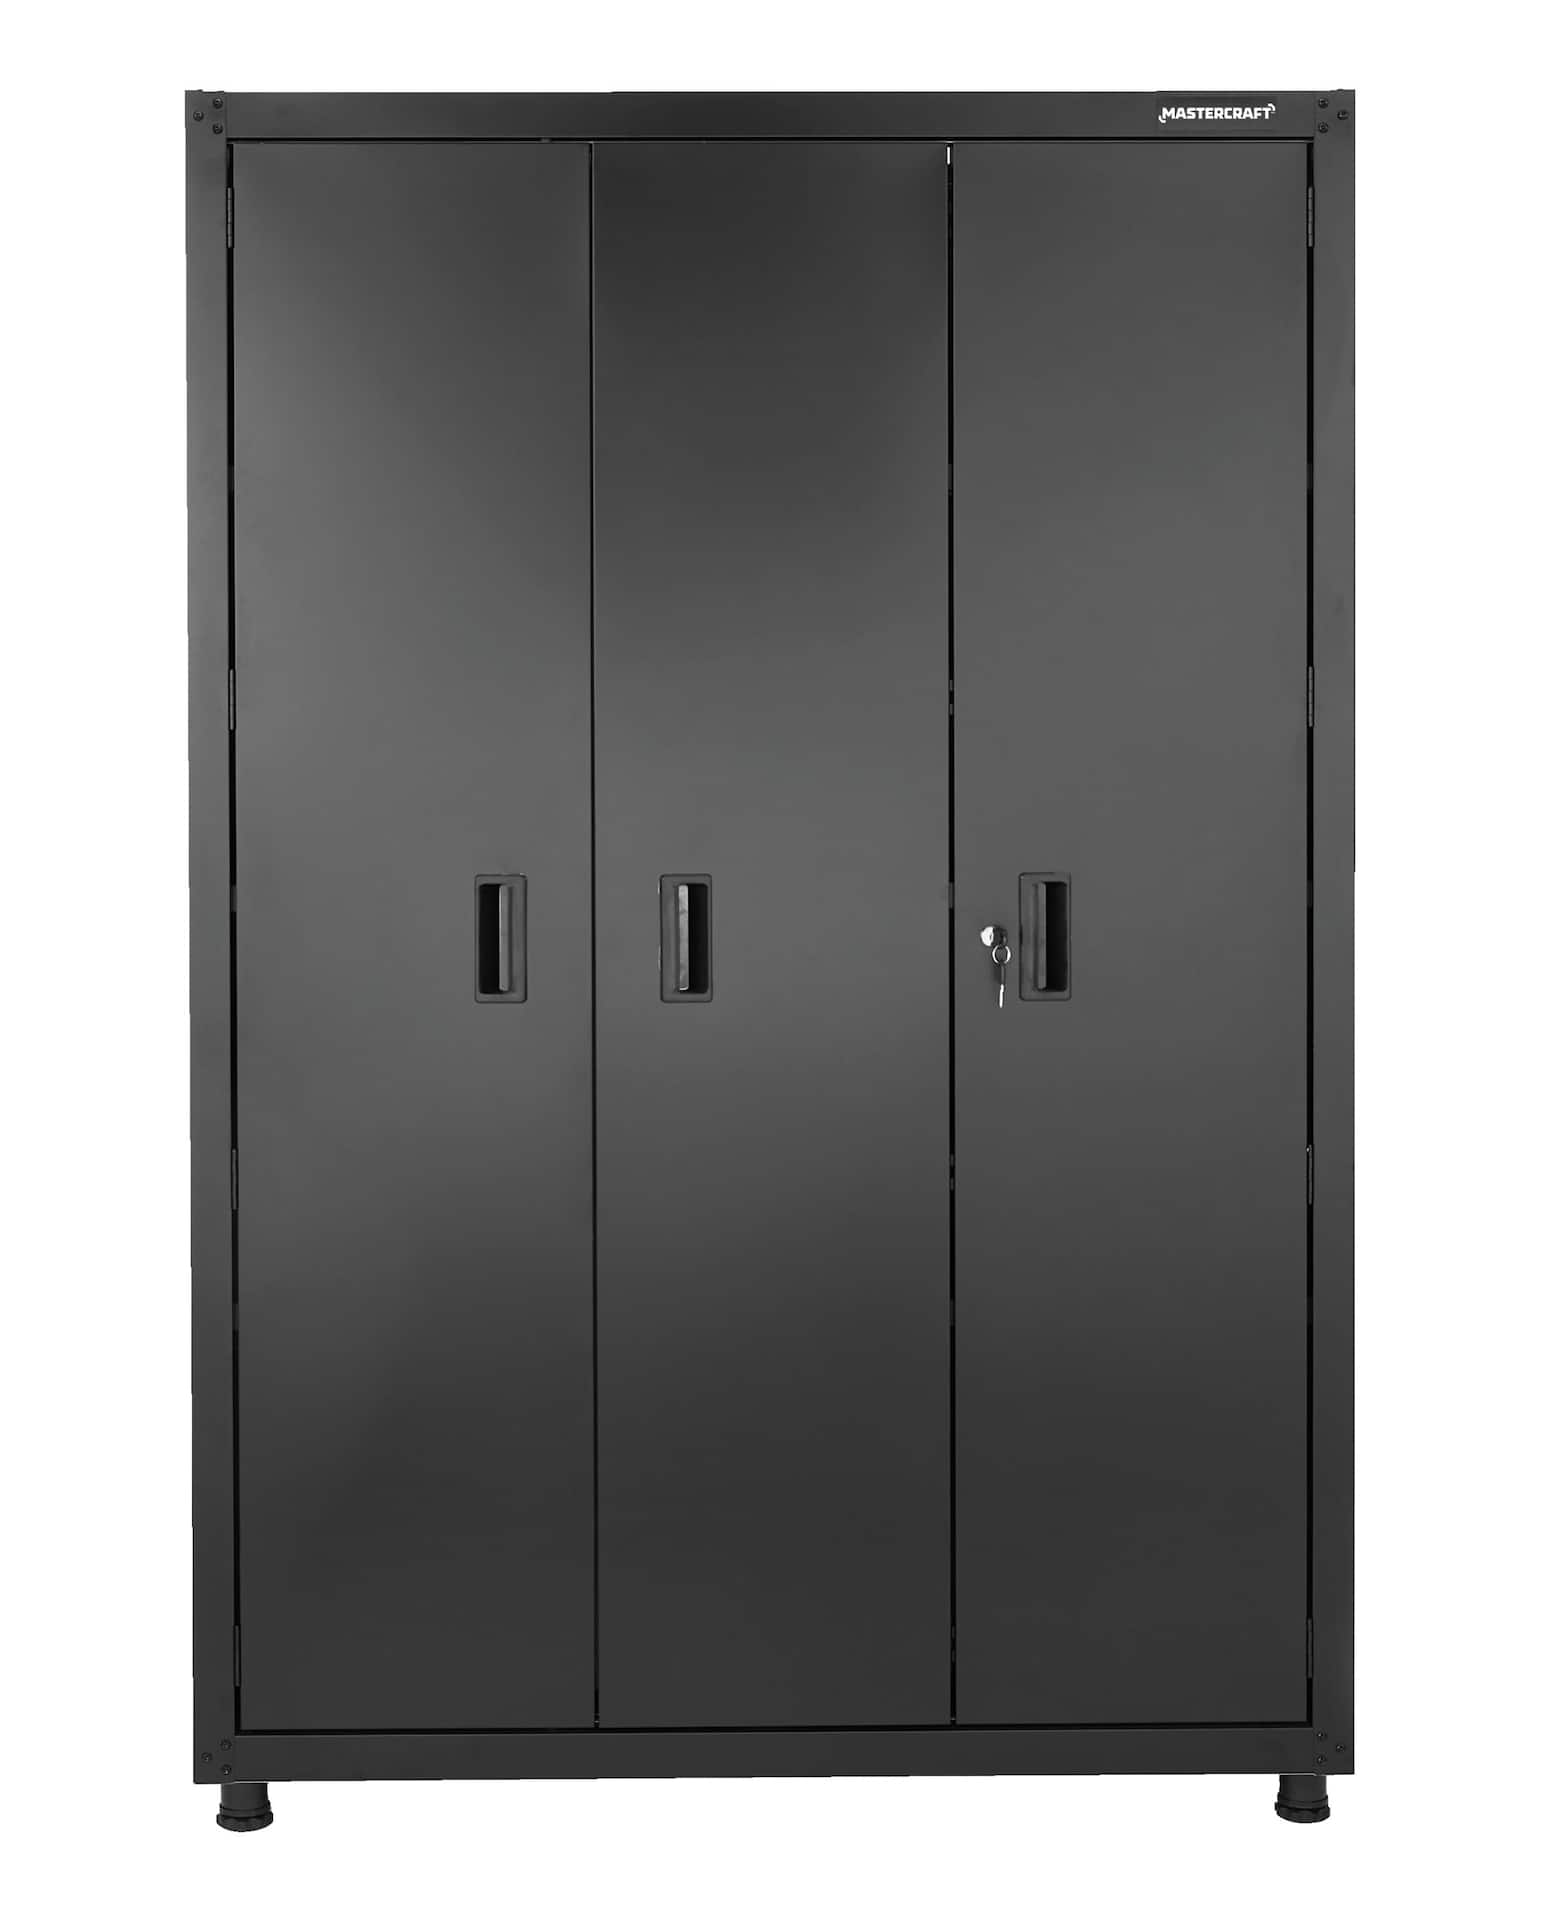 Armoire haute en métal avec portes coulissantes | Bureau, atelier, garage |  Occasion | 120cm